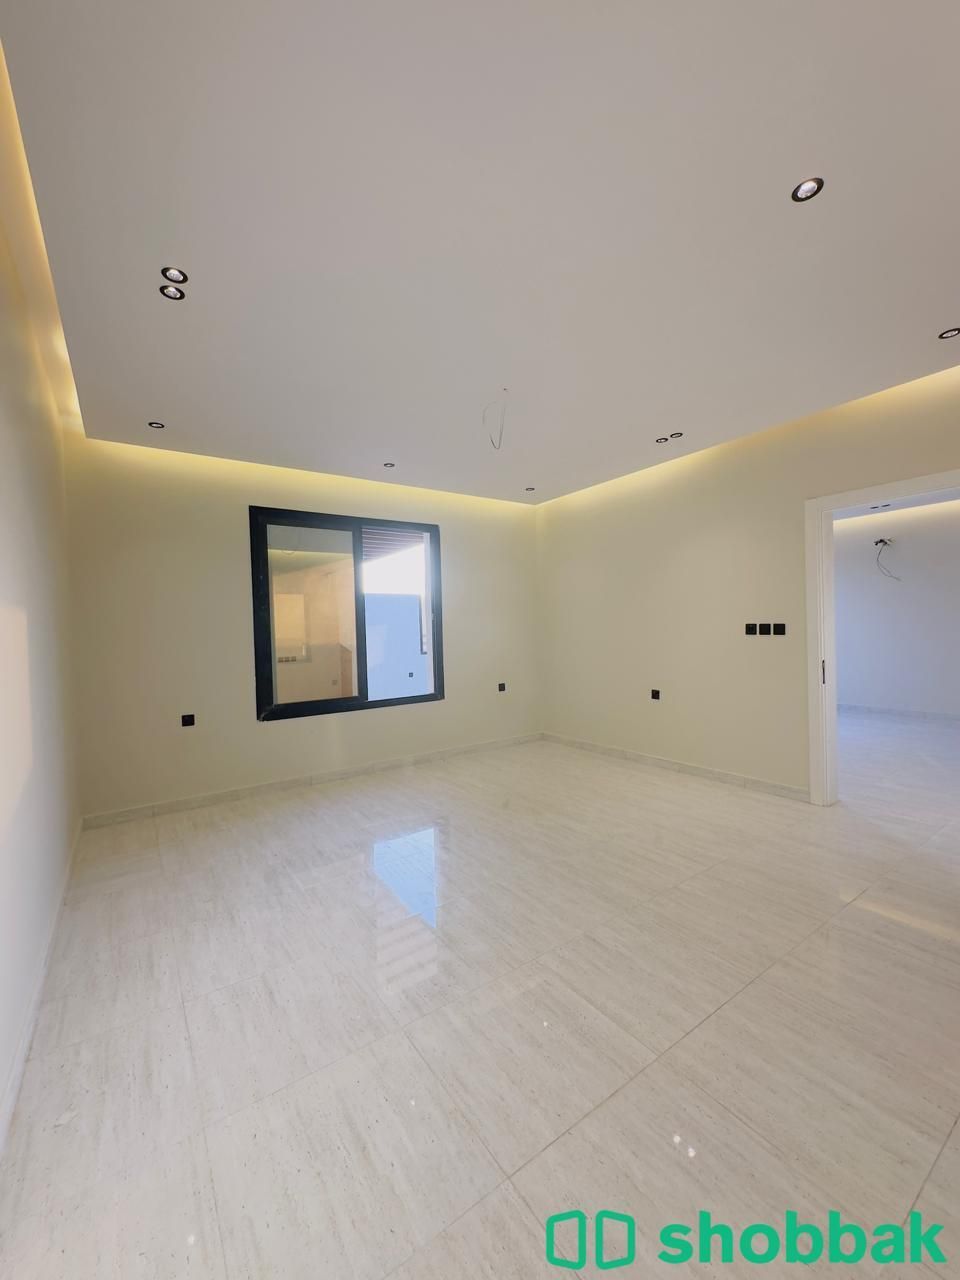 شقة 4 غرف بجدة حي الفيصلية للبيع من المالك مباشرة  Shobbak Saudi Arabia